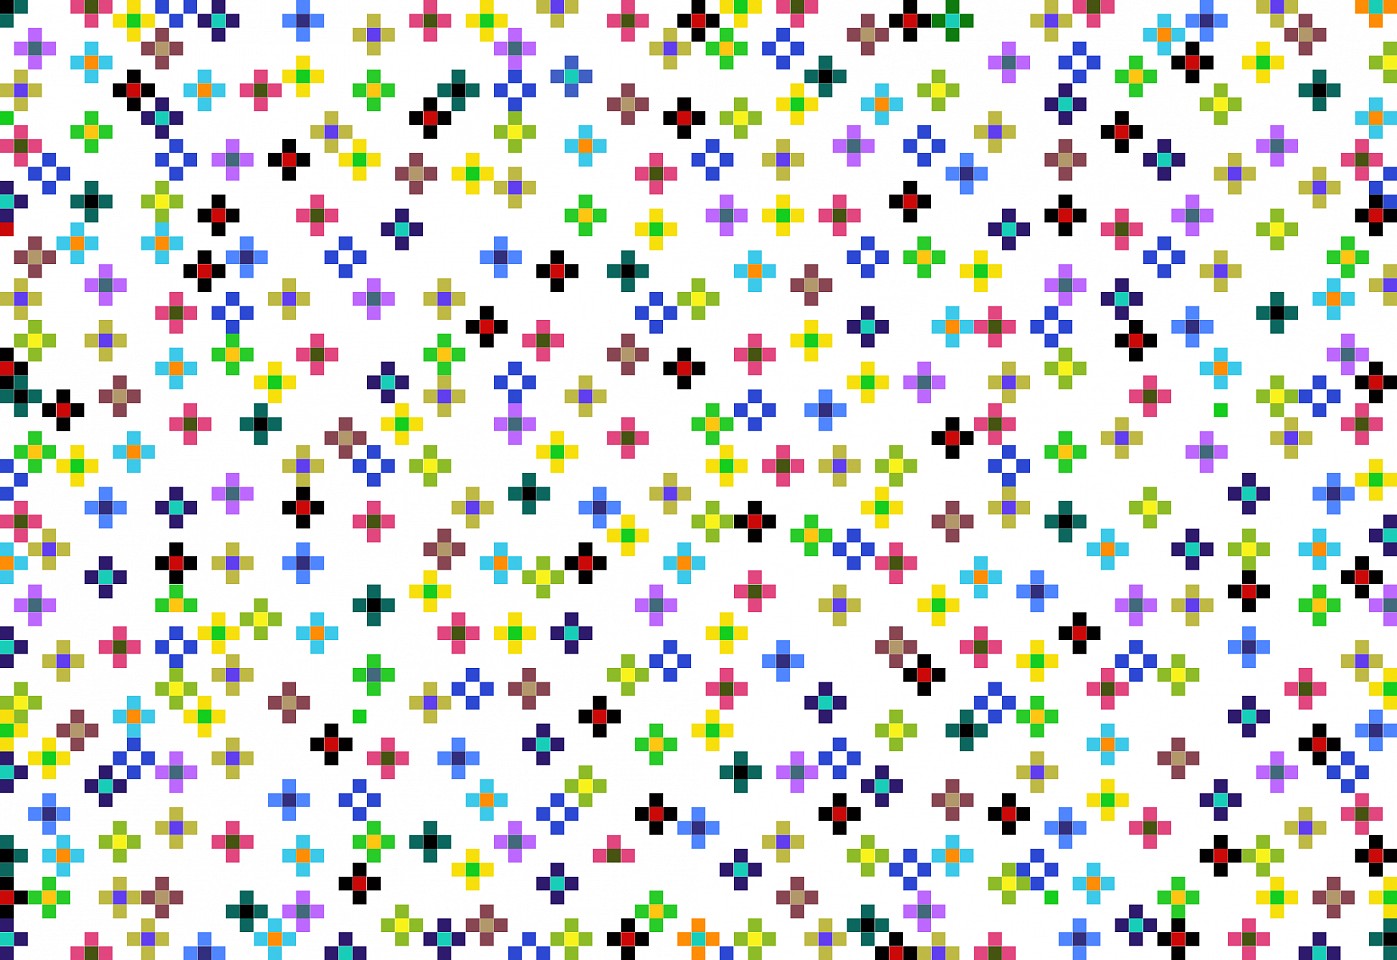 Dane Albert, Color Blocks #33, 2023
Acrylic on canvas (Concept), 48 x 60 in. (121.9 x 152.4 cm)
Series of colored blocks in multiple configurations
DA.cb-2023-033